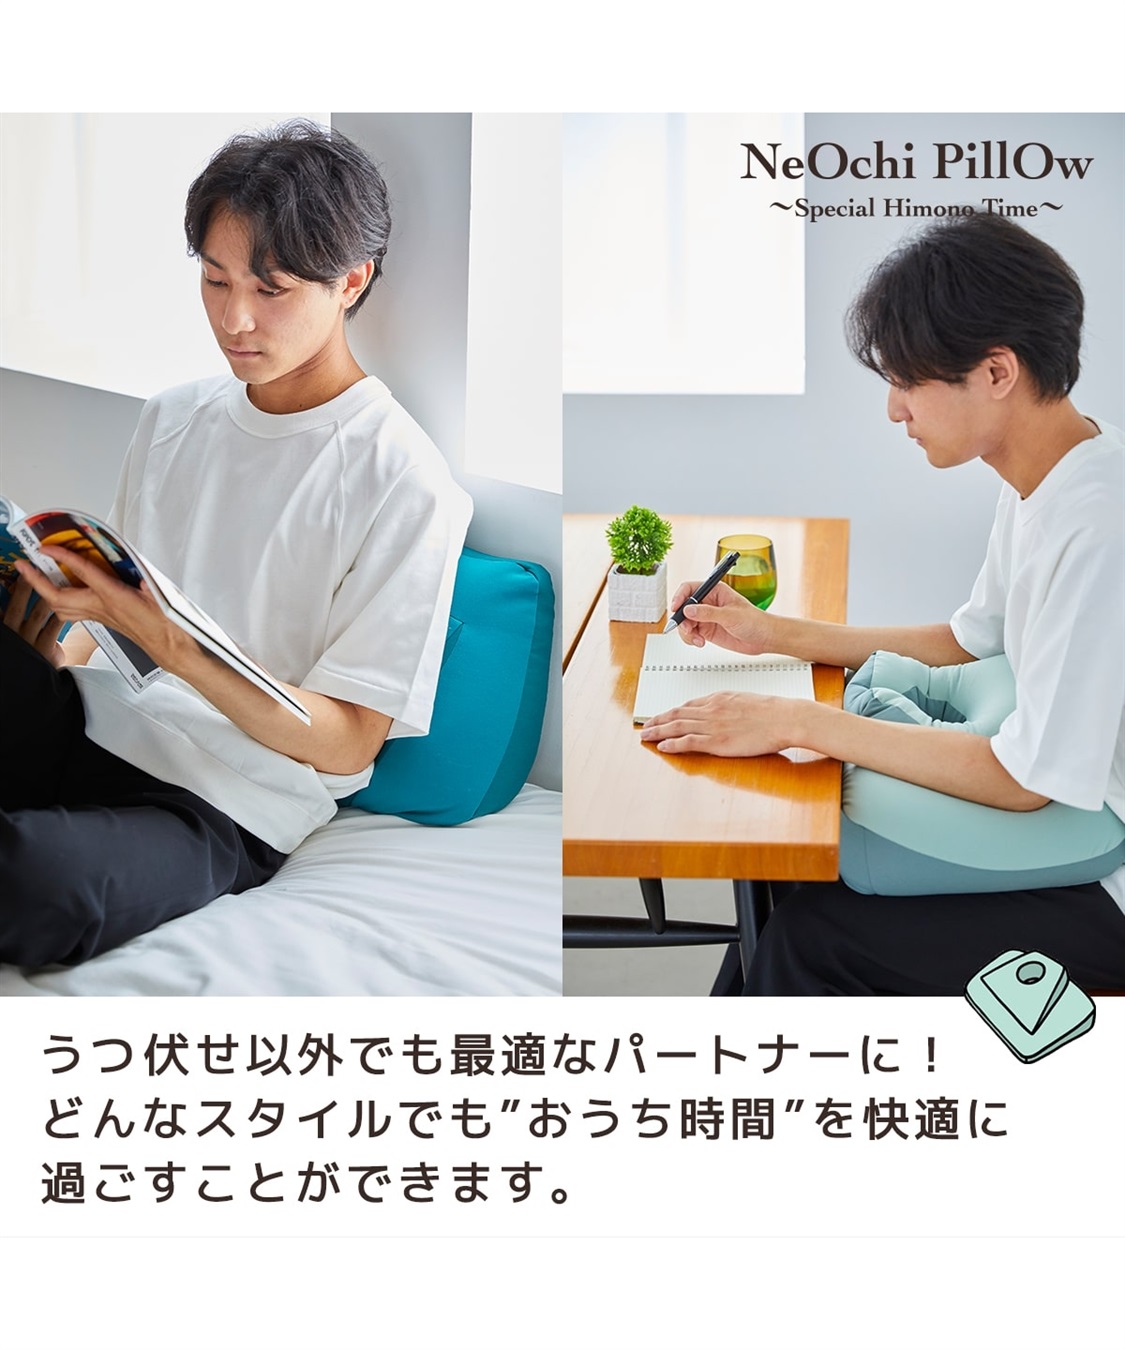 NeOchi Pillow Mini（ねおちピローミニ）寝落ちピロー cross marche 